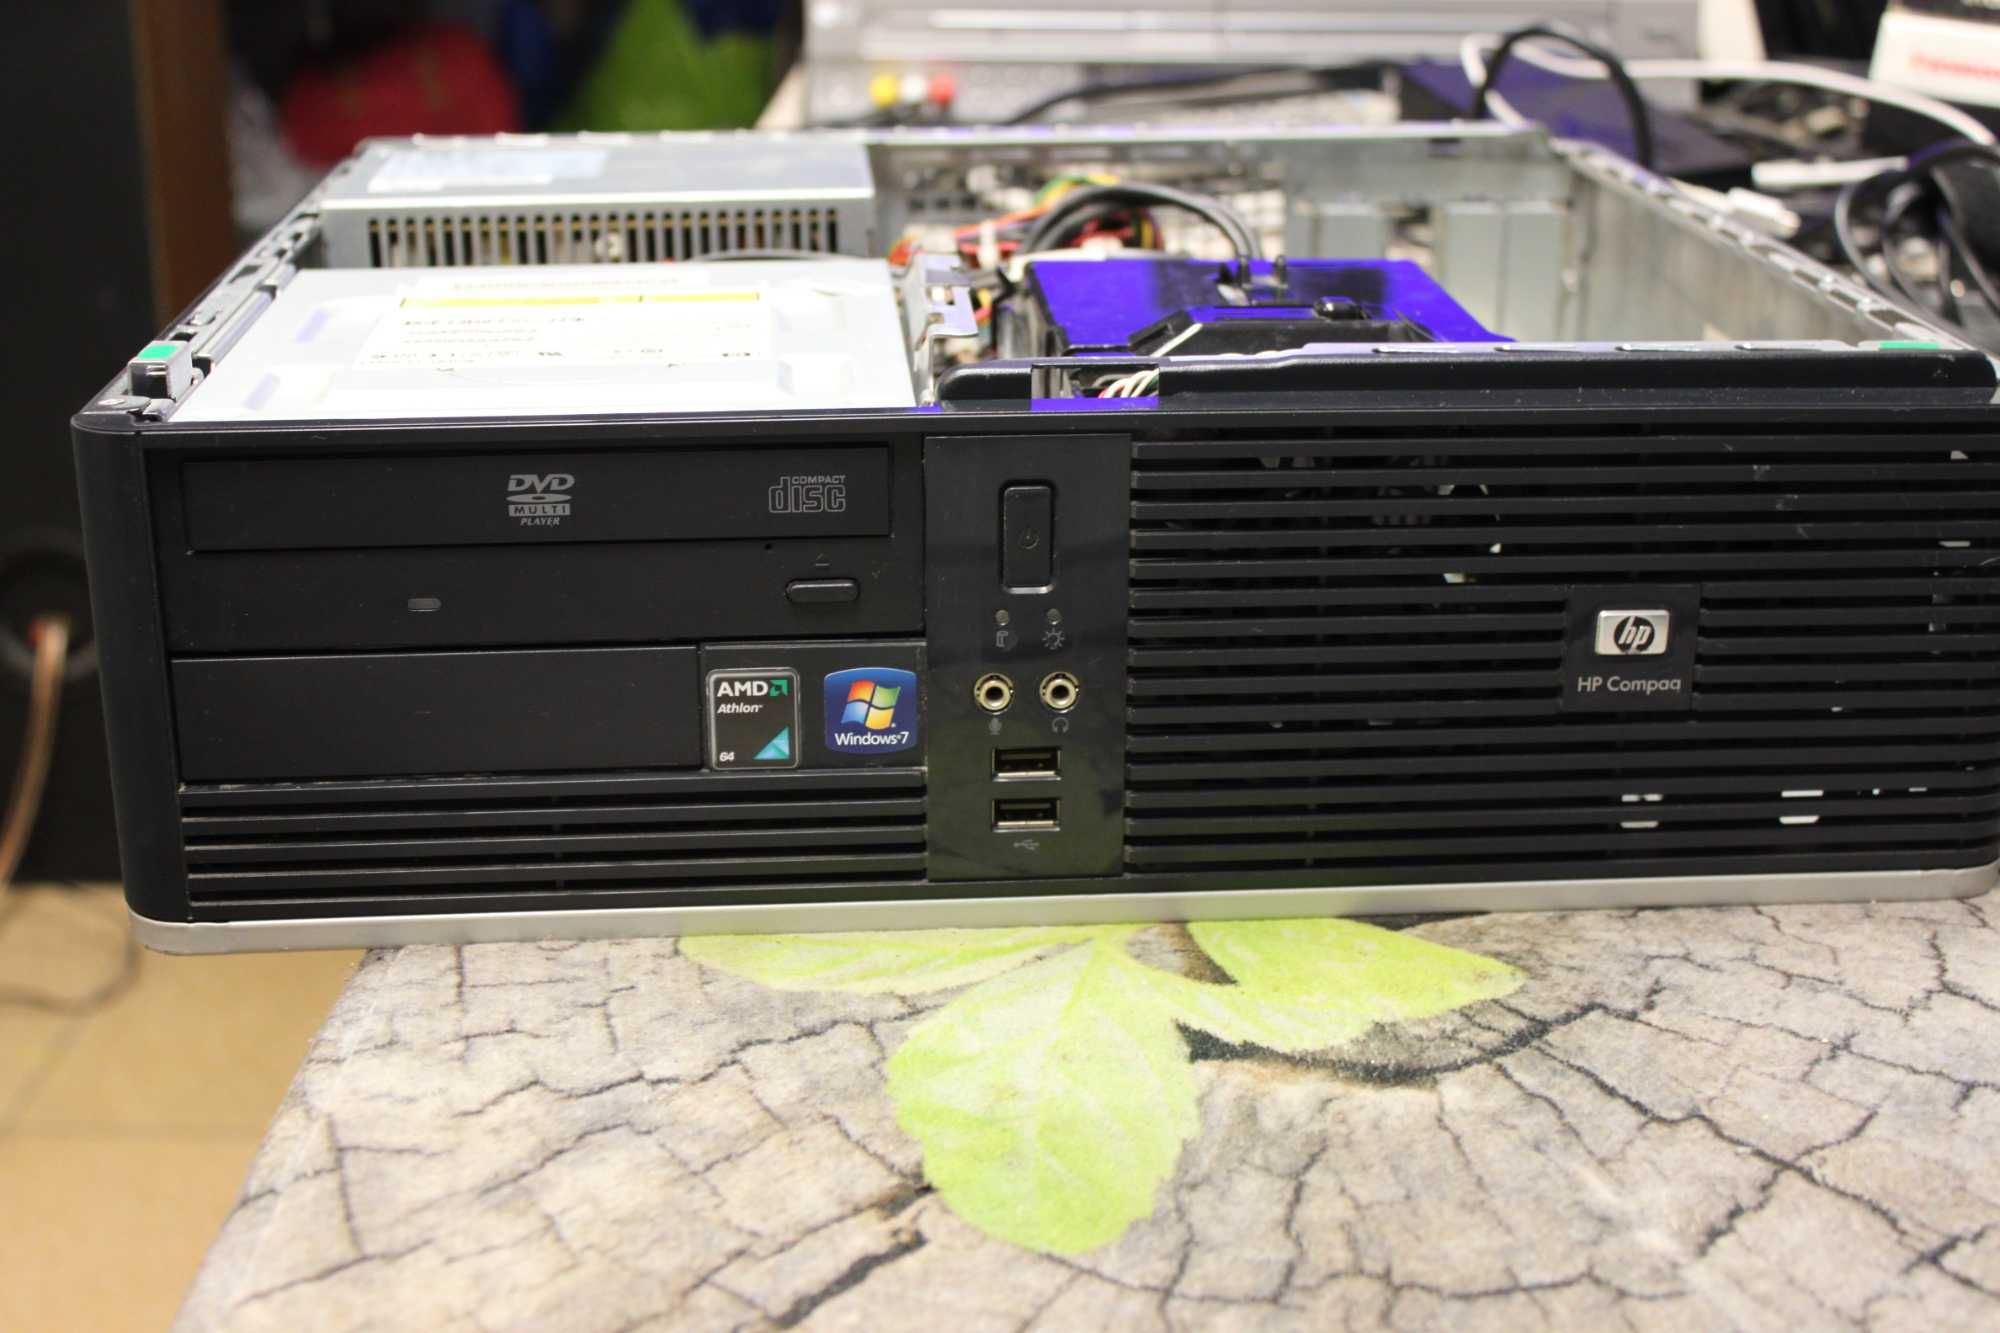 komputer stacjonarny Compaq dc5750 sprawny